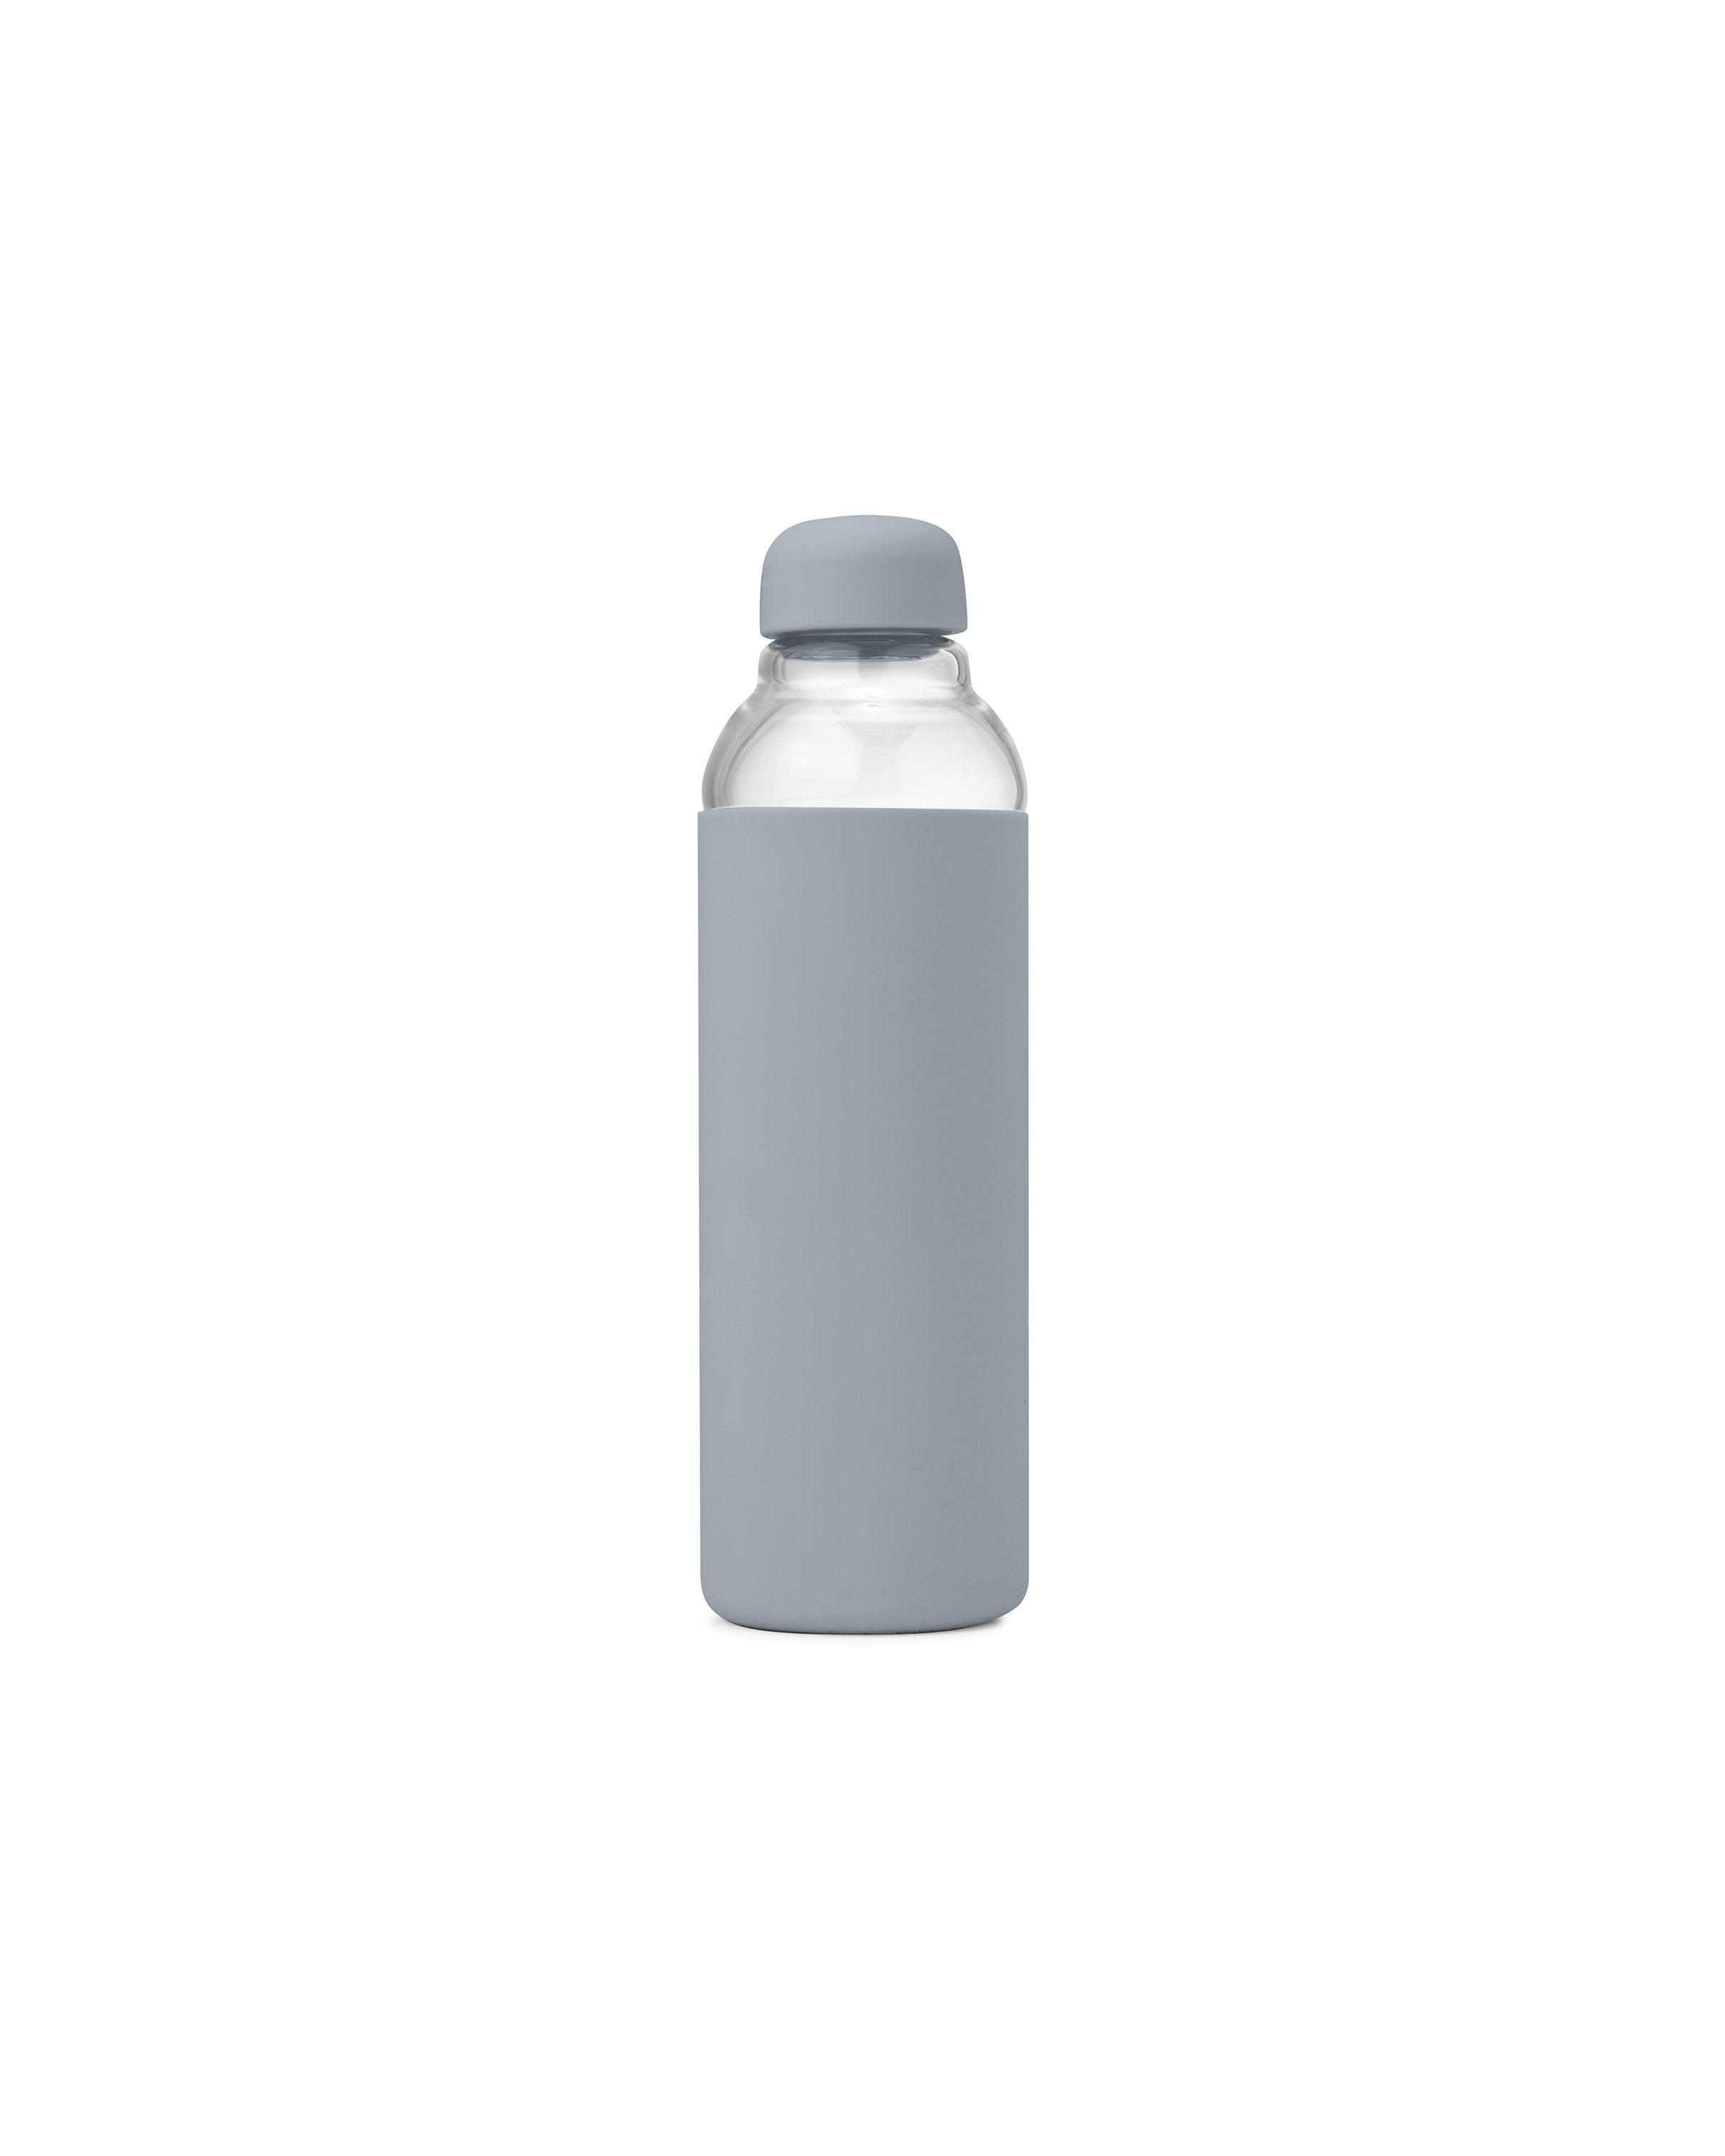 Blank Water Bottles - Shop Wholesale Water Bottles in Bulk